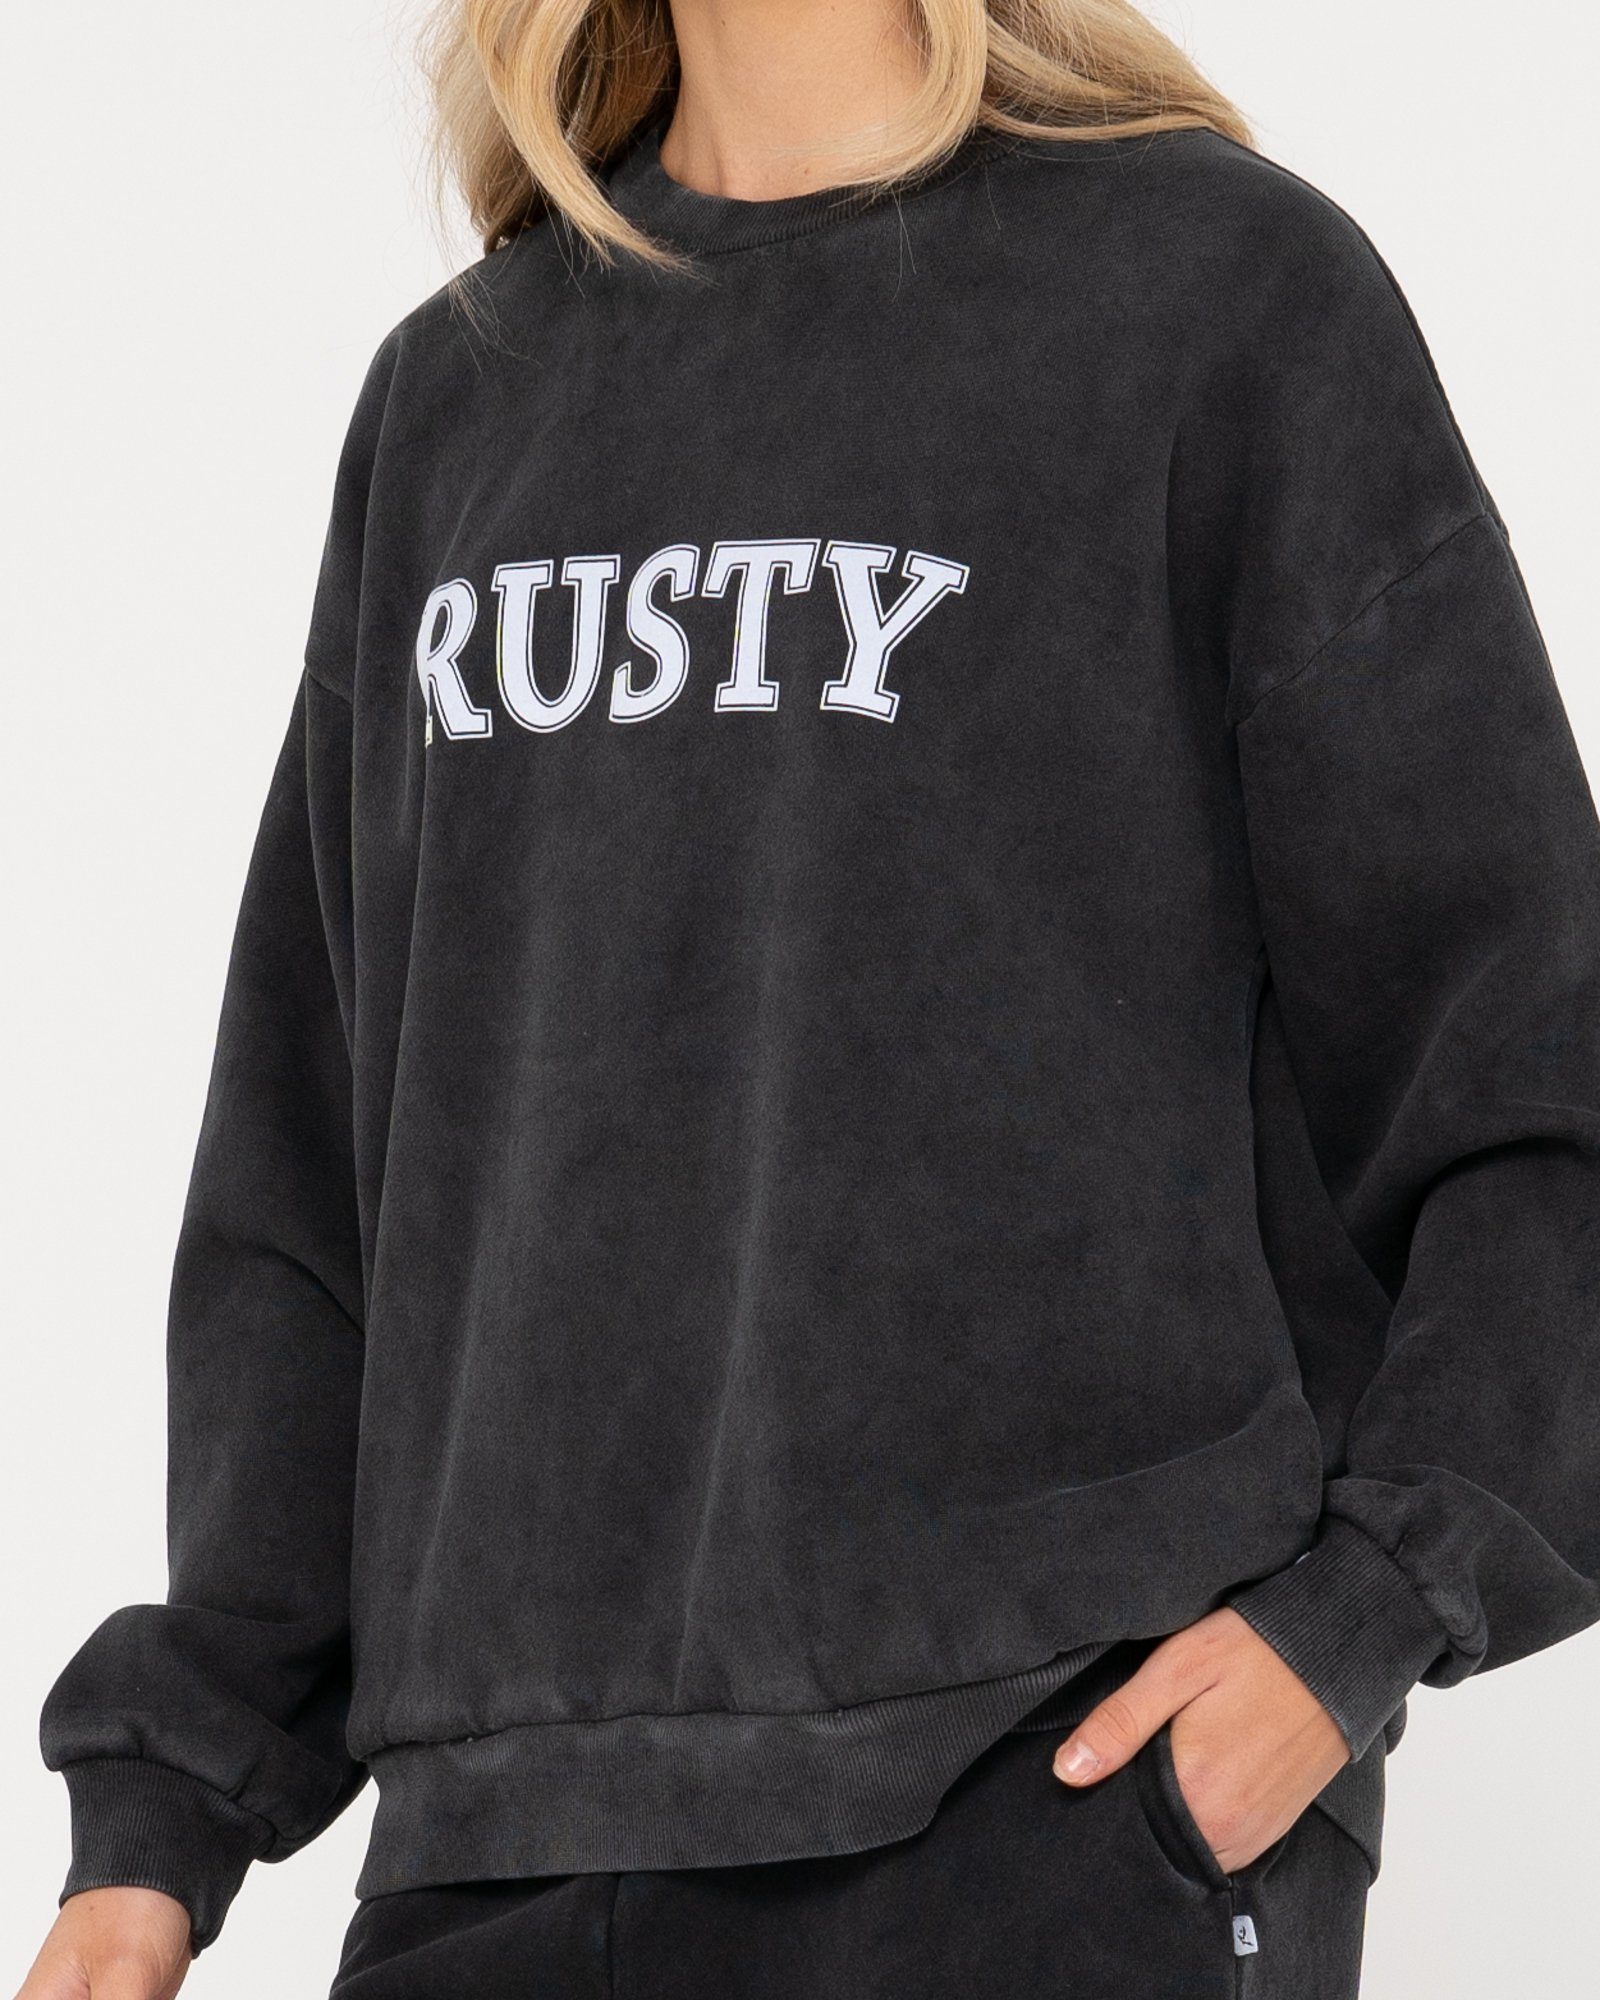 OVERSIZE Sweatshirt CREW Rusty RUSTY FLEECE